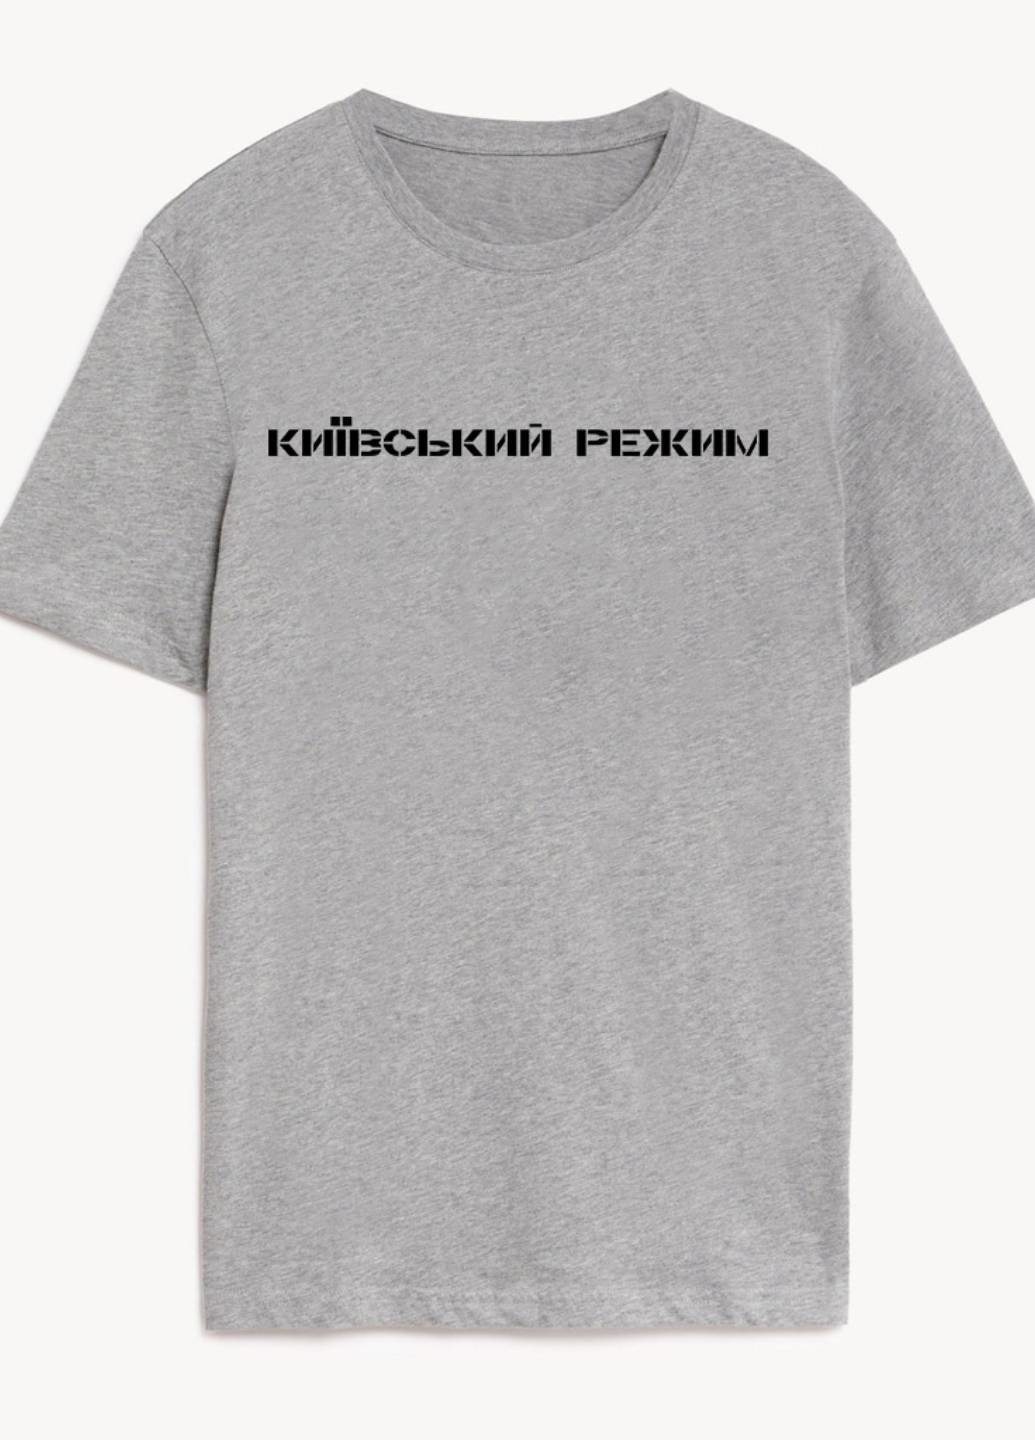 Серая демисезон футболка женская серая київський режим Love&Live